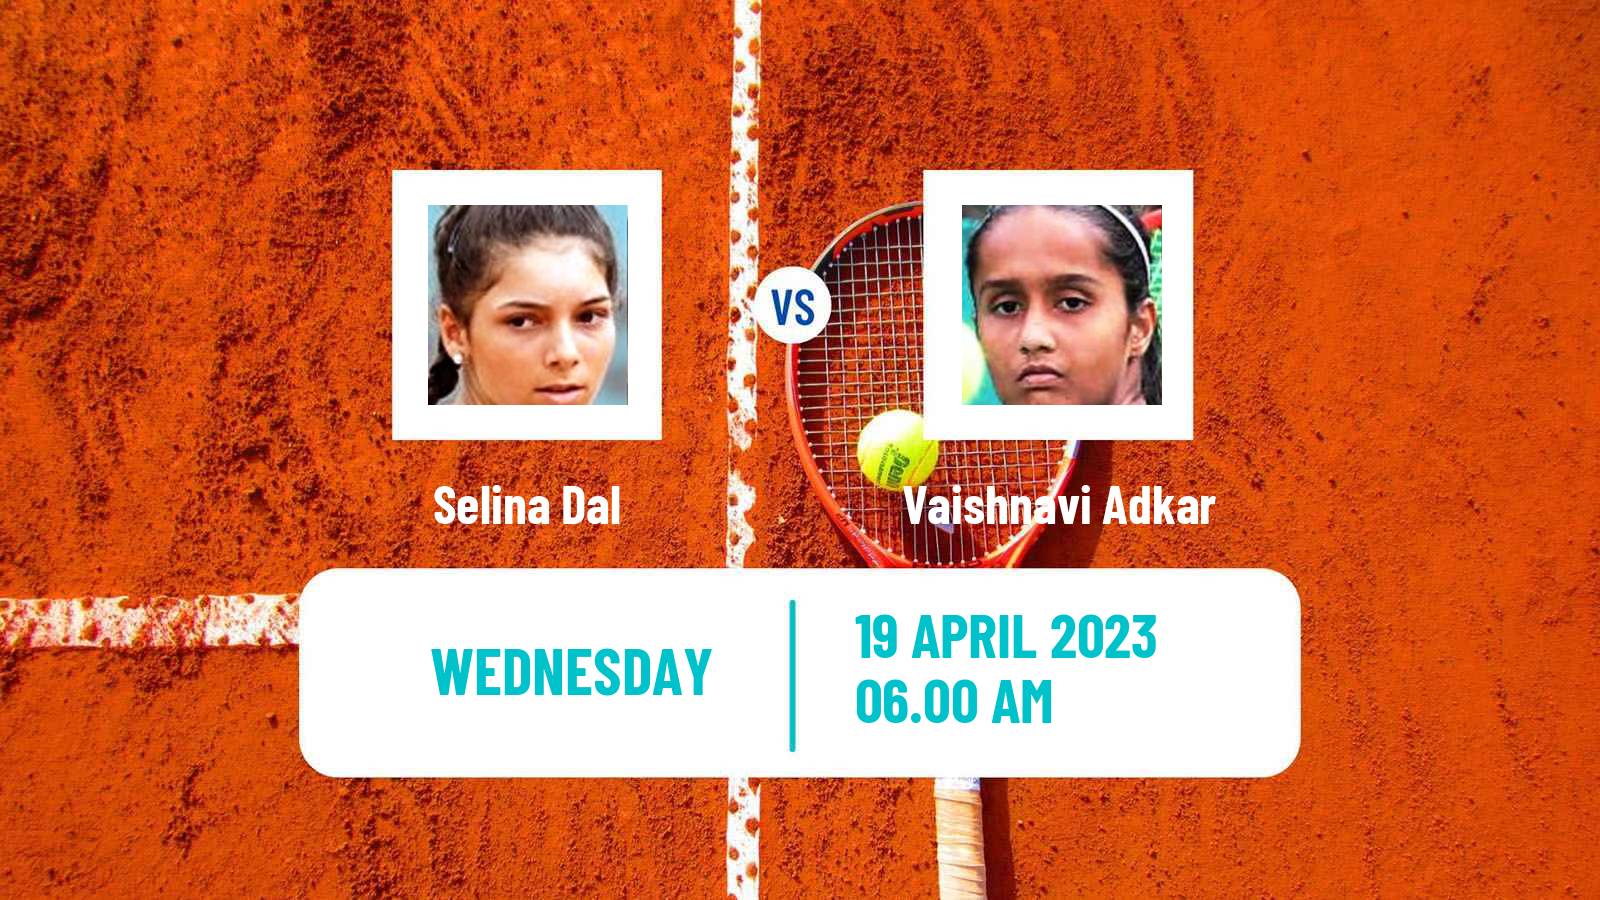 Tennis ITF Tournaments Selina Dal - Vaishnavi Adkar